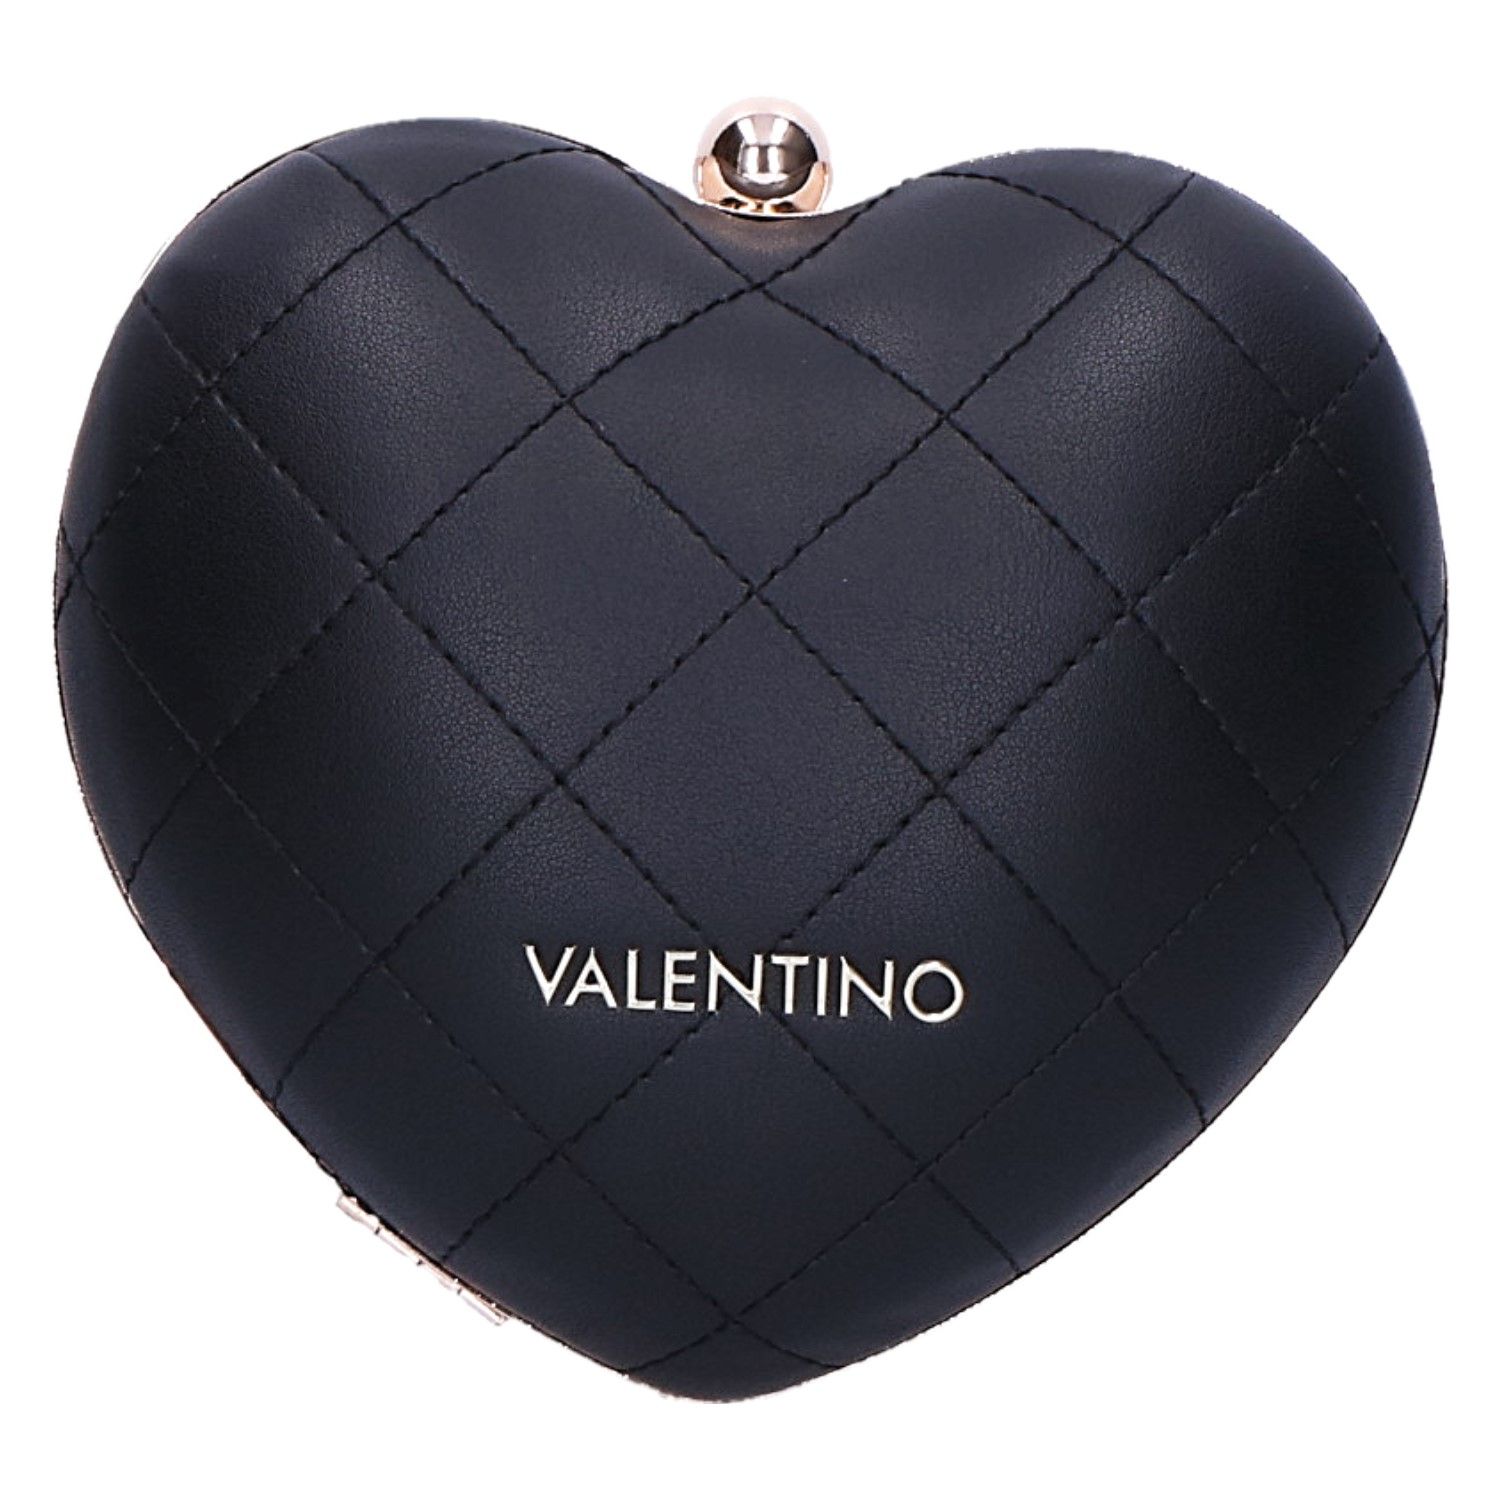 Met opzet gebruik typist Valentino Catalunya Tas/Clutch zwart/goud acc met artikelnummer  CatalunyaVBS4IH01 verkrijgbaar bij Beurskens schoenmode.